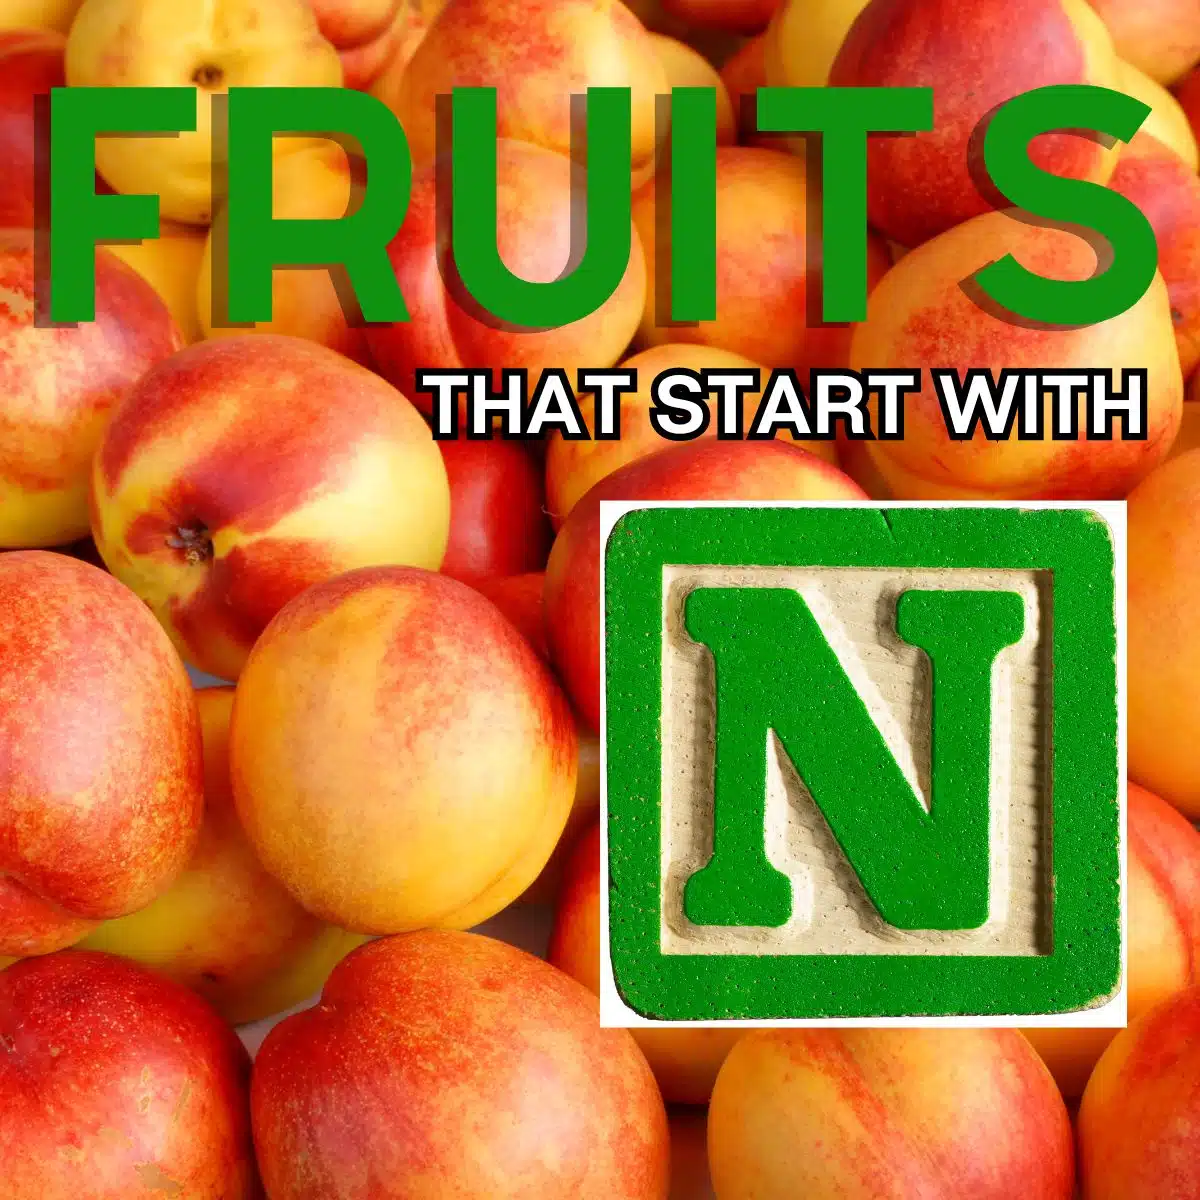 ネクタリンをフィーチャーした、N で始まる果物の正方形の画像。